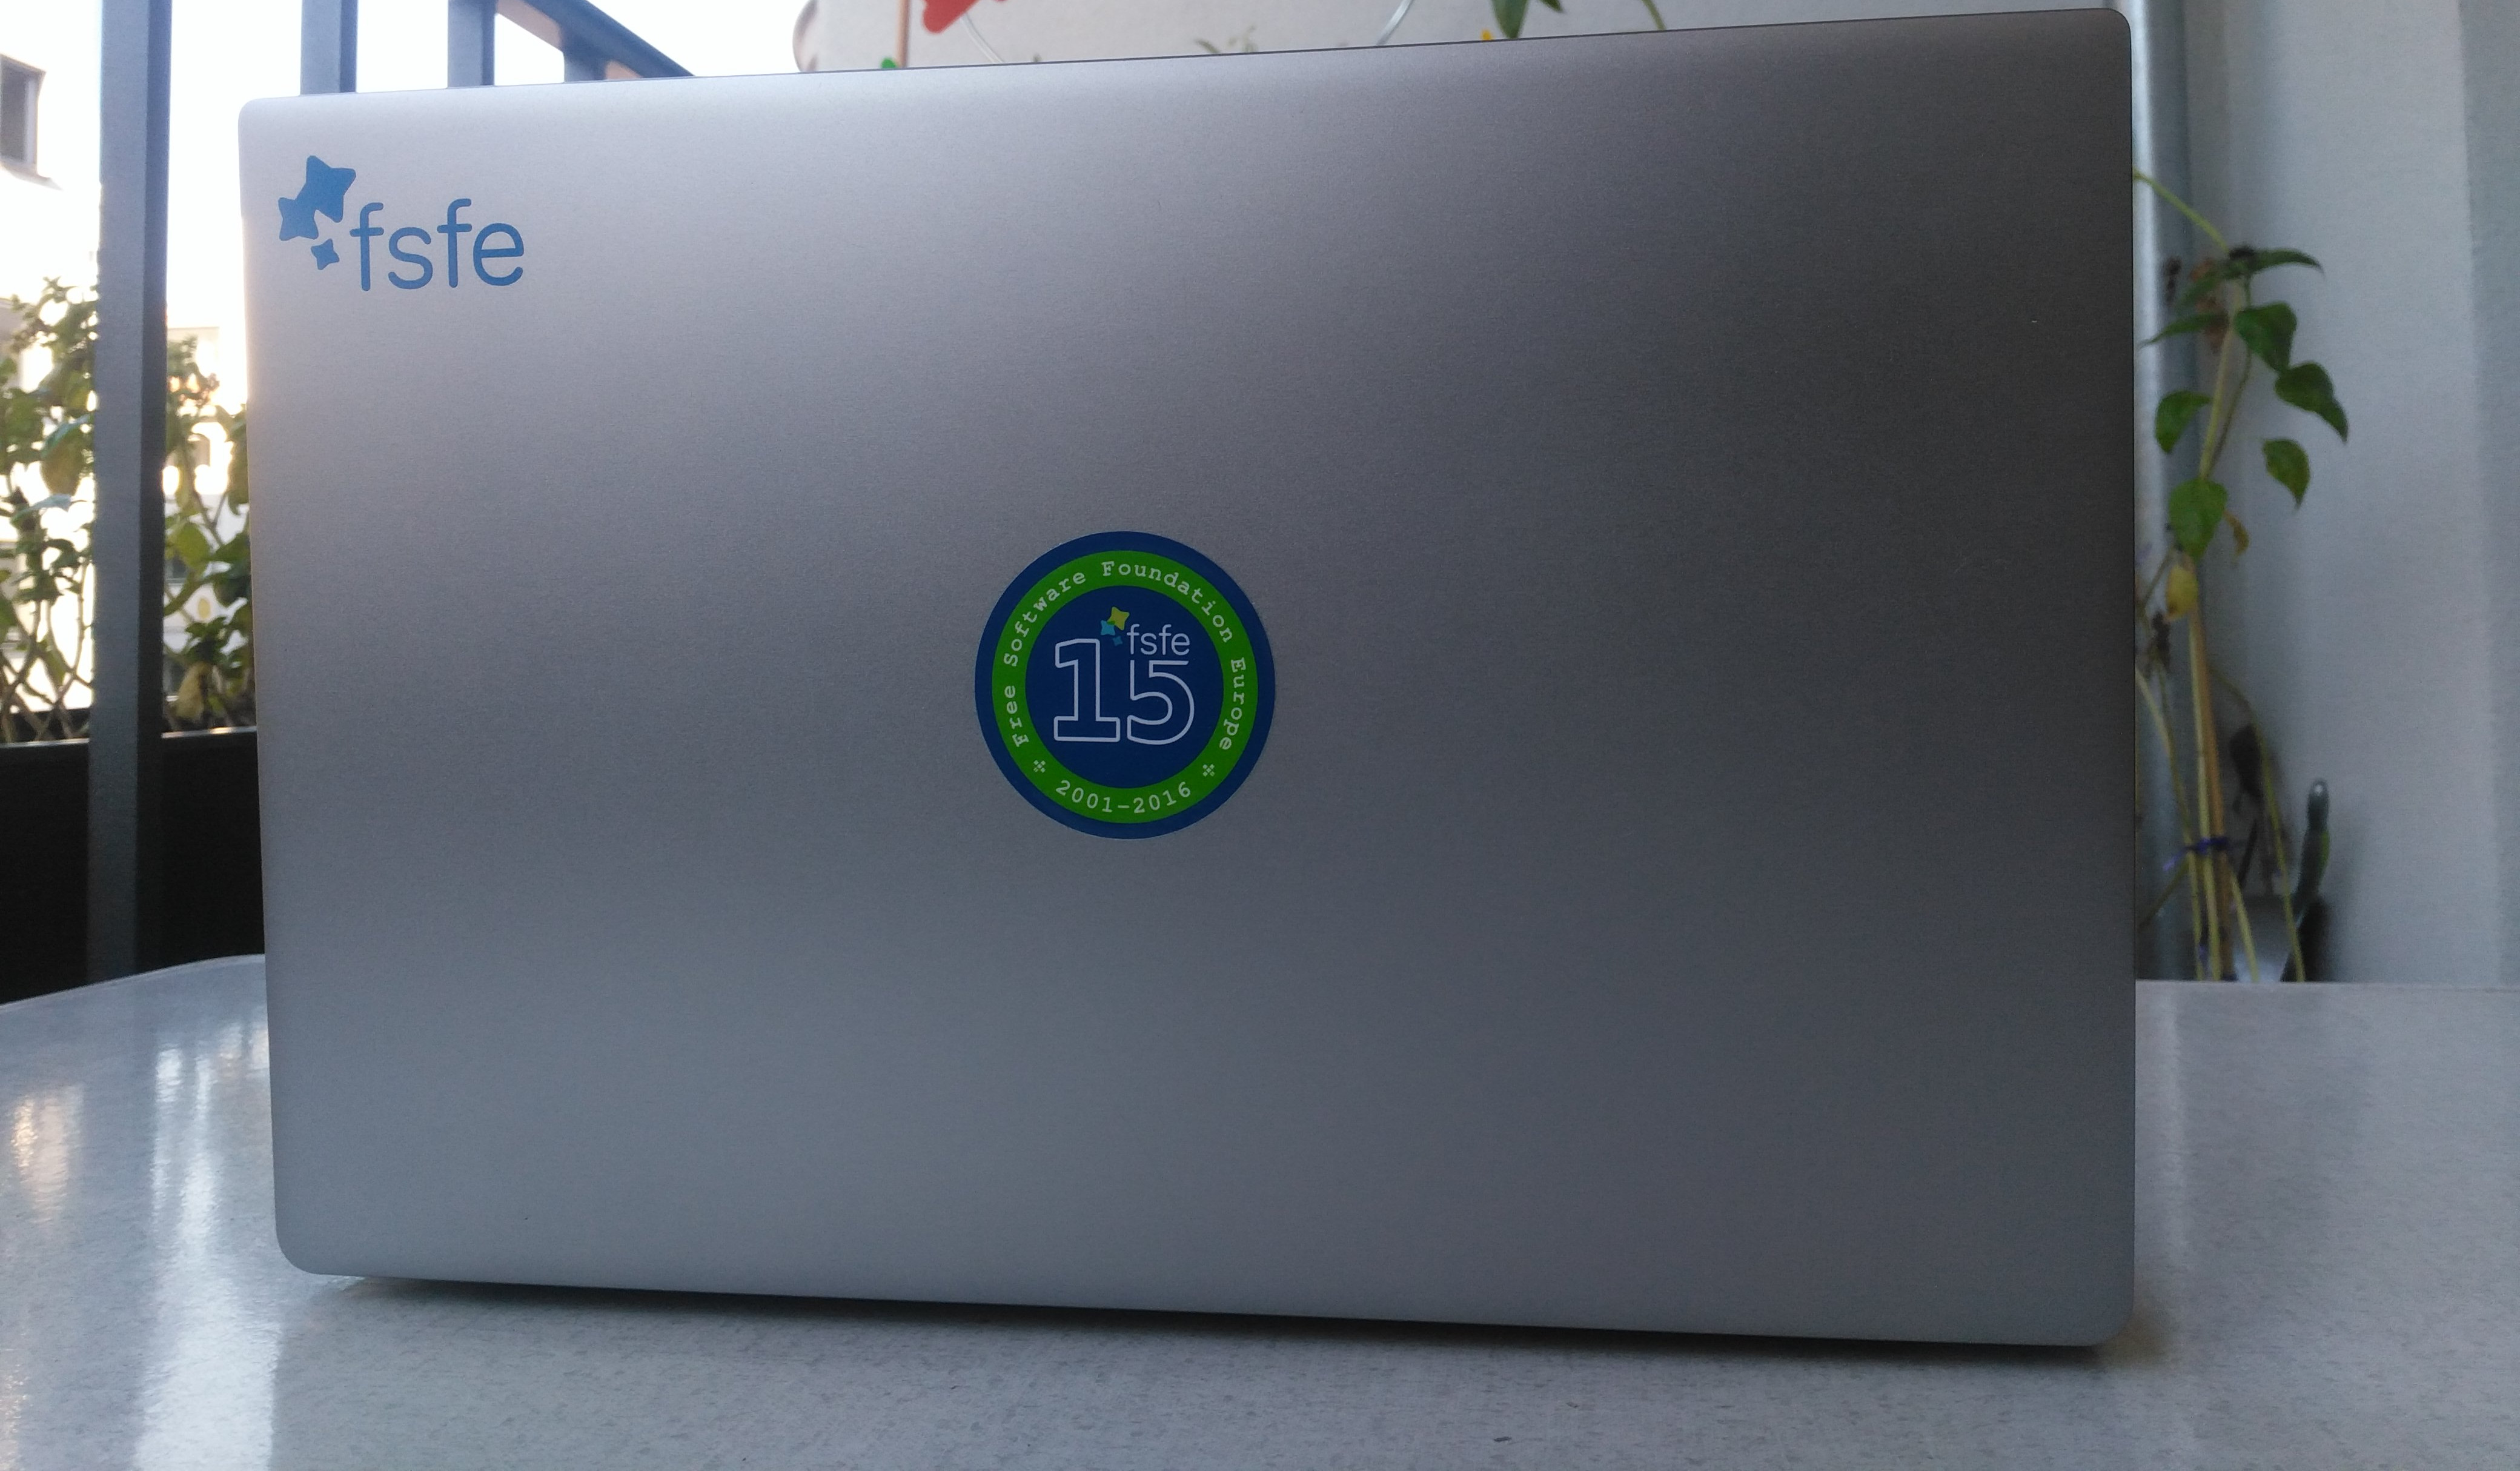 The FSFE15 sticker on my laptop